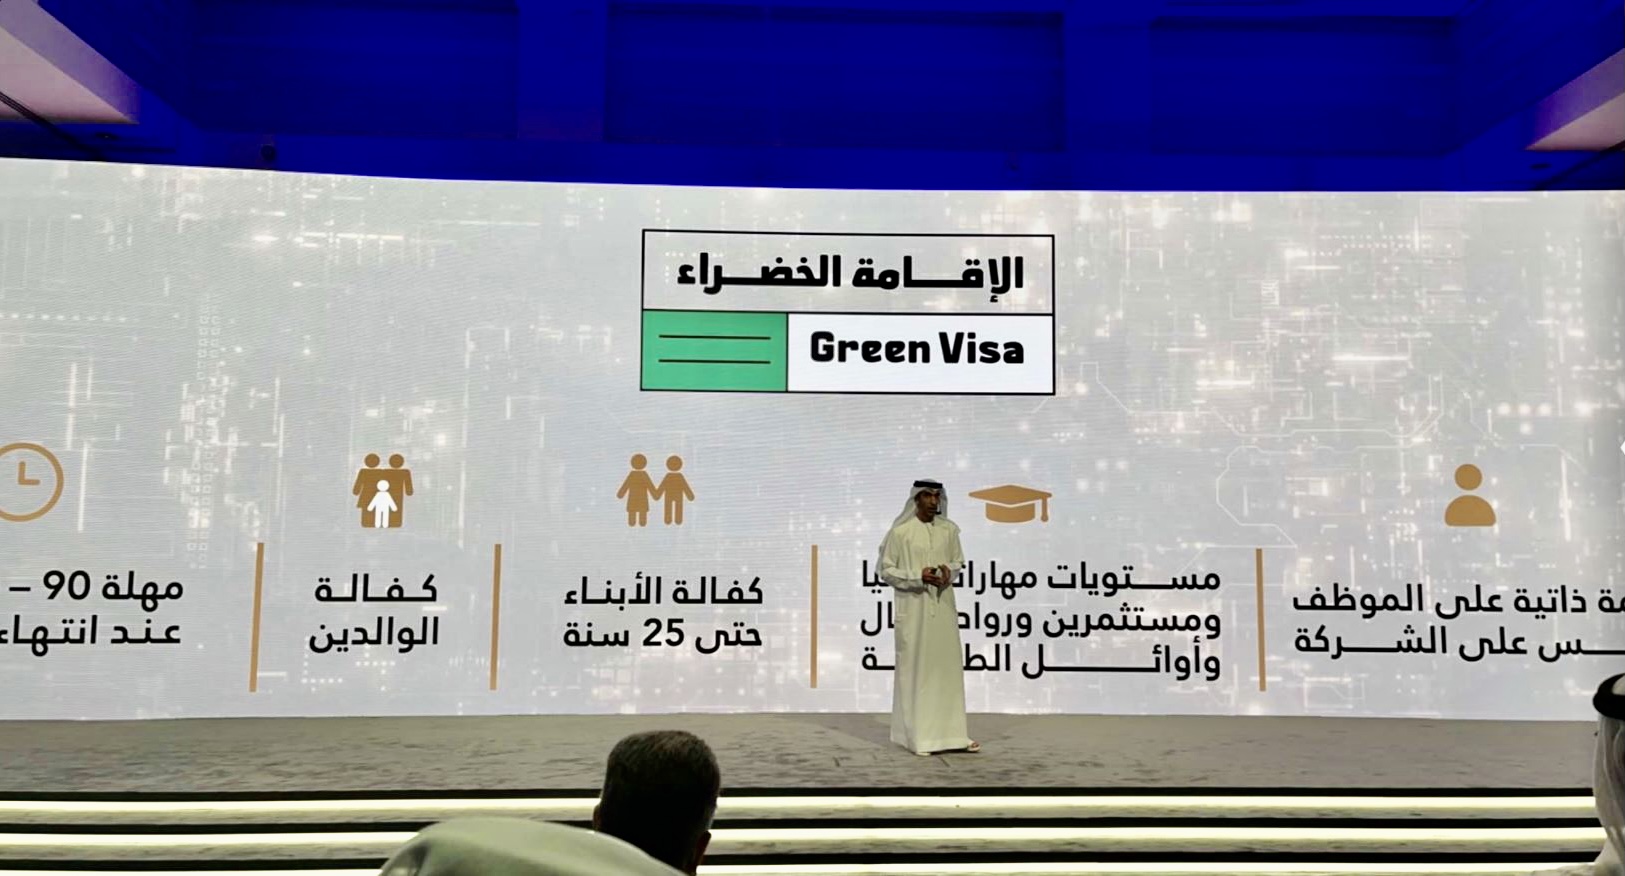 الإمارات تطلق مساراً متكاملاً للإقامة يشمل الإقامات العادية والذهبية والخضراء